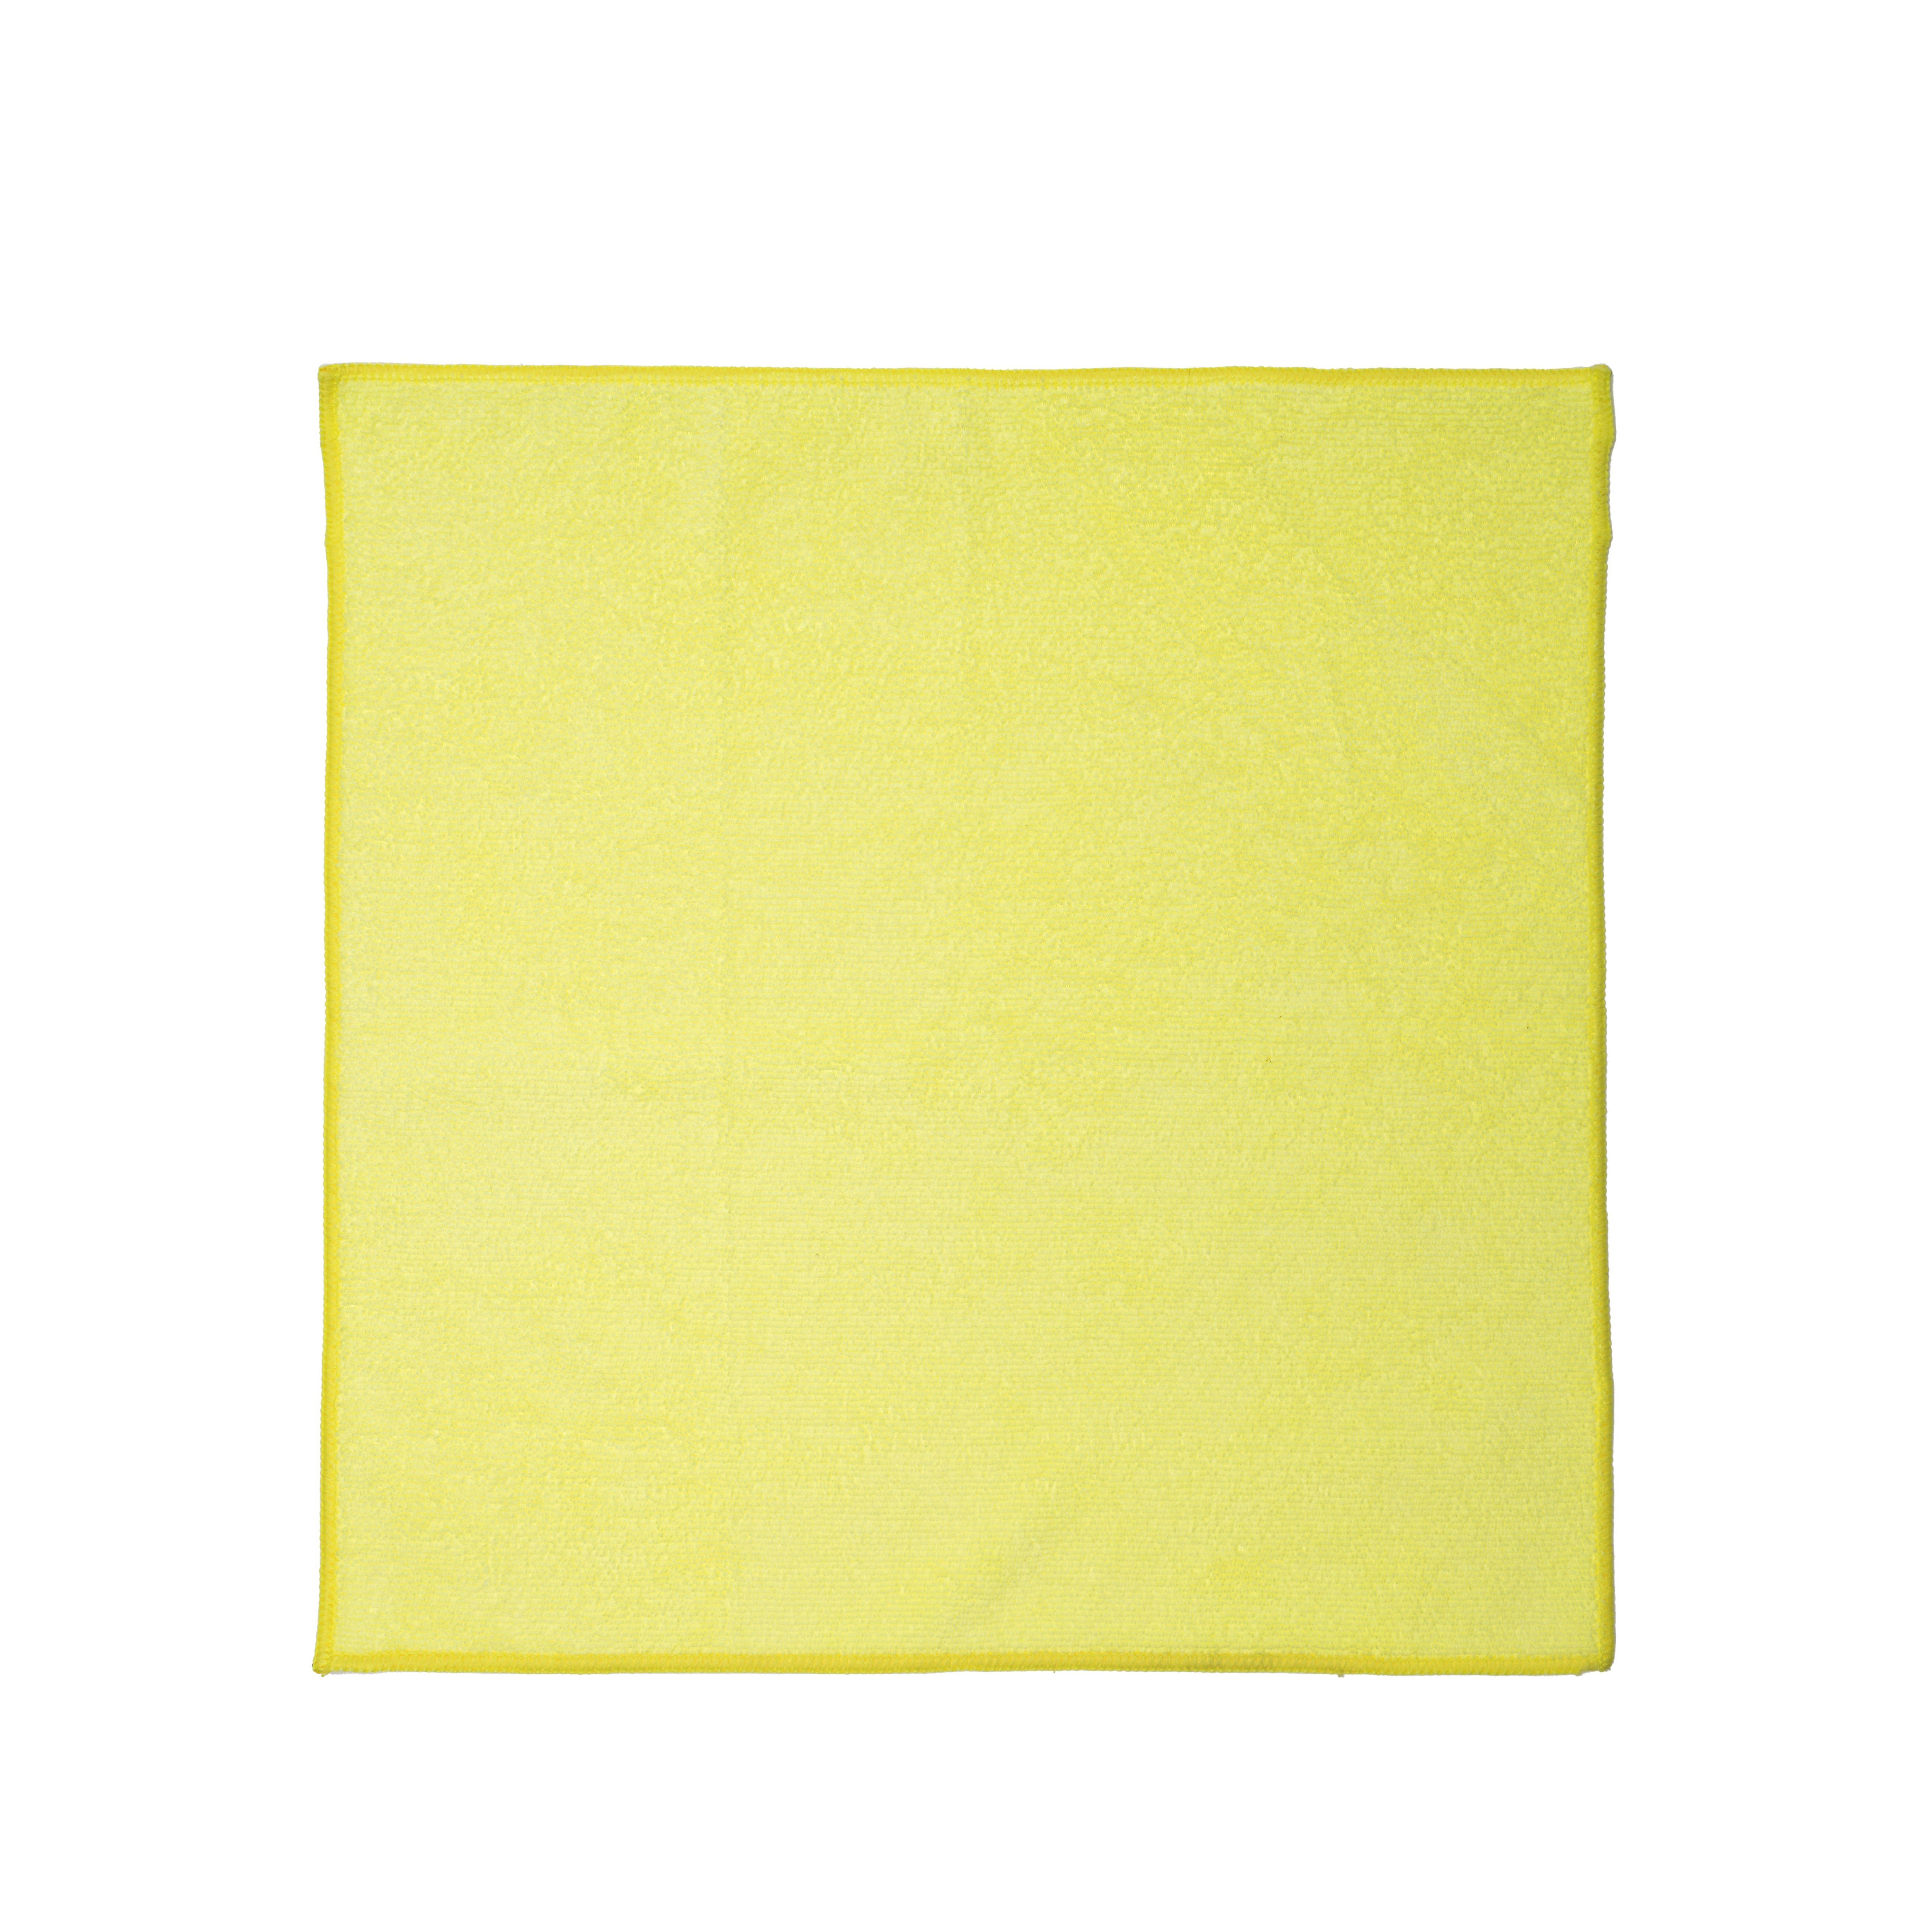 Home (Mikrofaser, Putzlappen) gelb 5-tlg., Mikrofasertücher cm, Putztücher Reinigungstücher 40x40 One